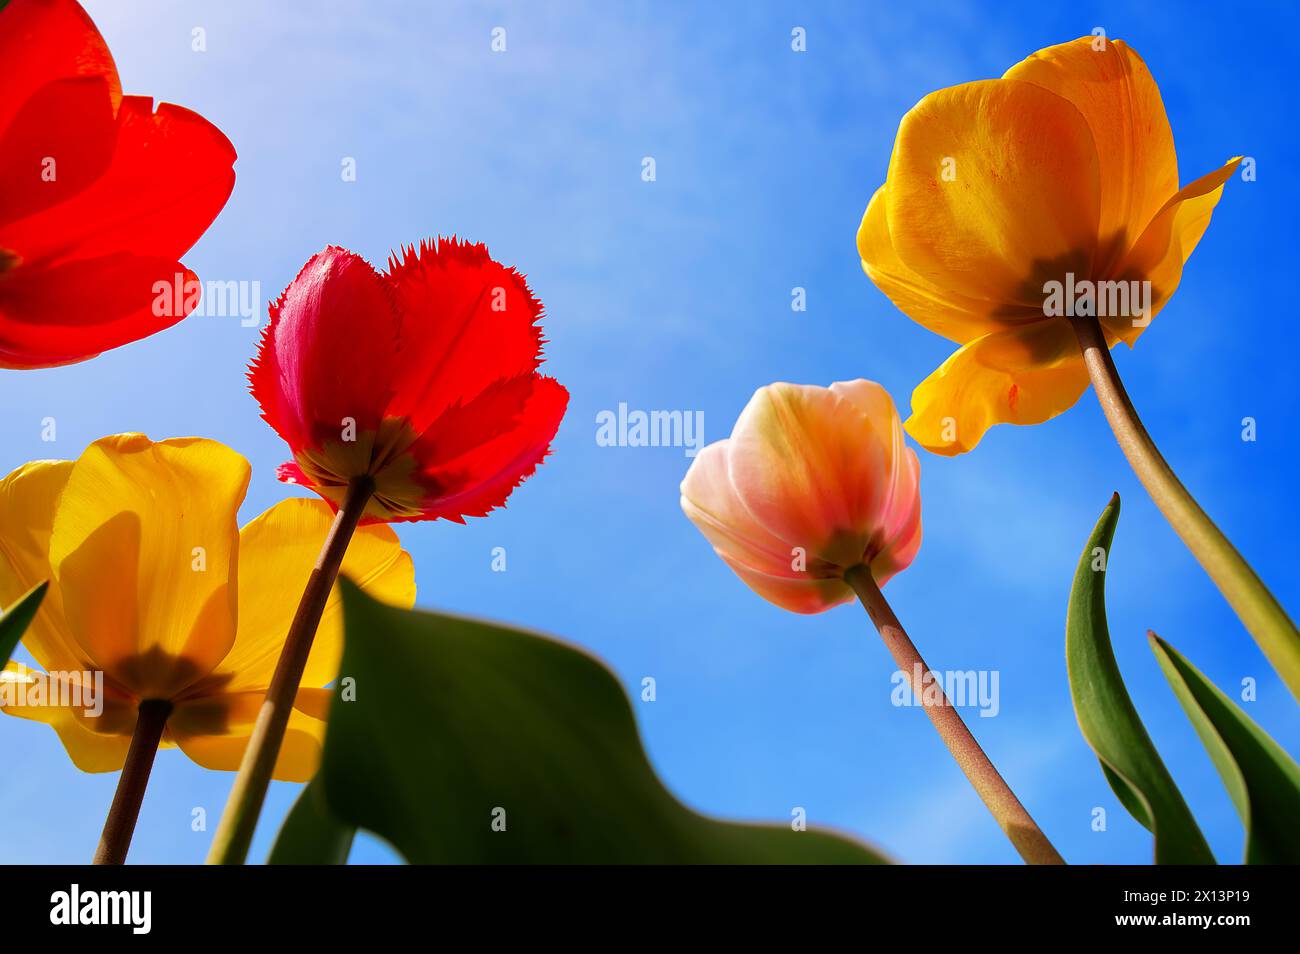 Tulipes avec des fleurs en forme de tasse colorées audacieusement contre le ciel bleu Banque D'Images